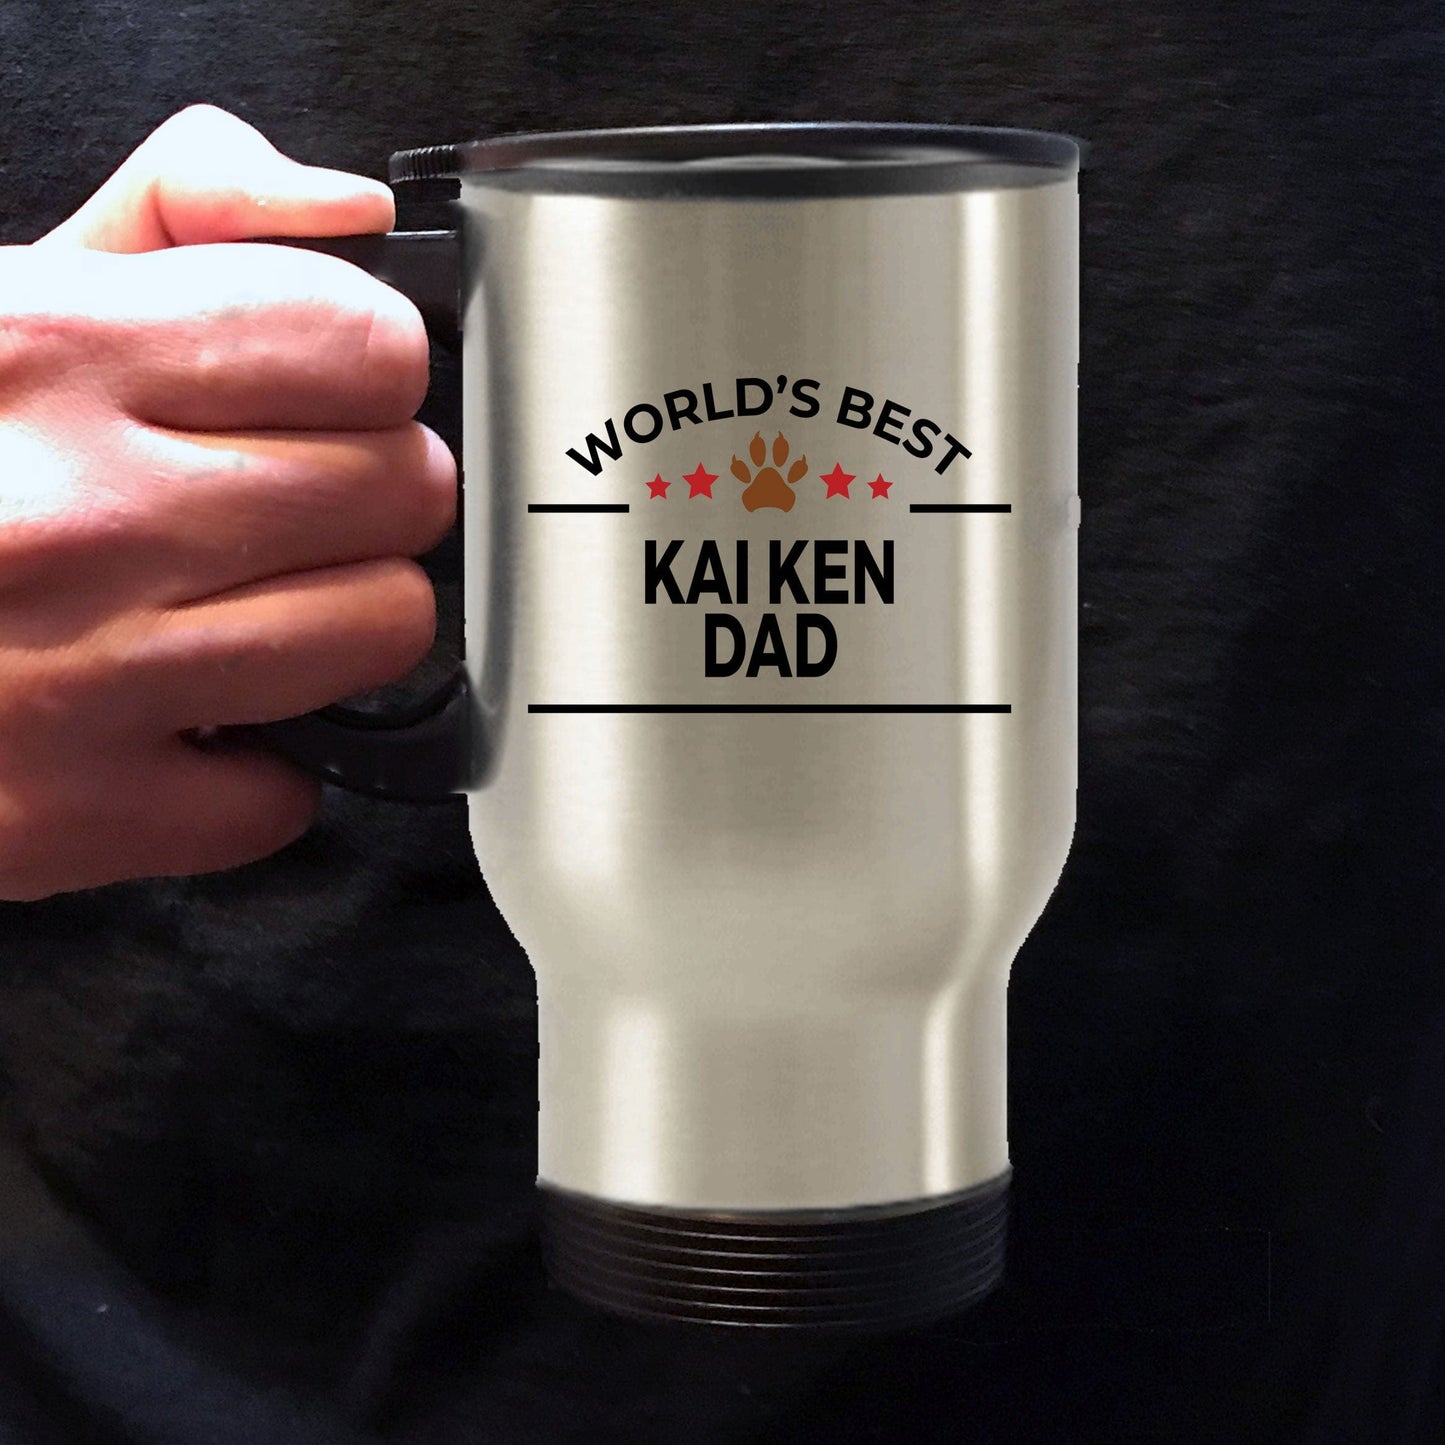 Kai Ken Dog Dad Travel Mug